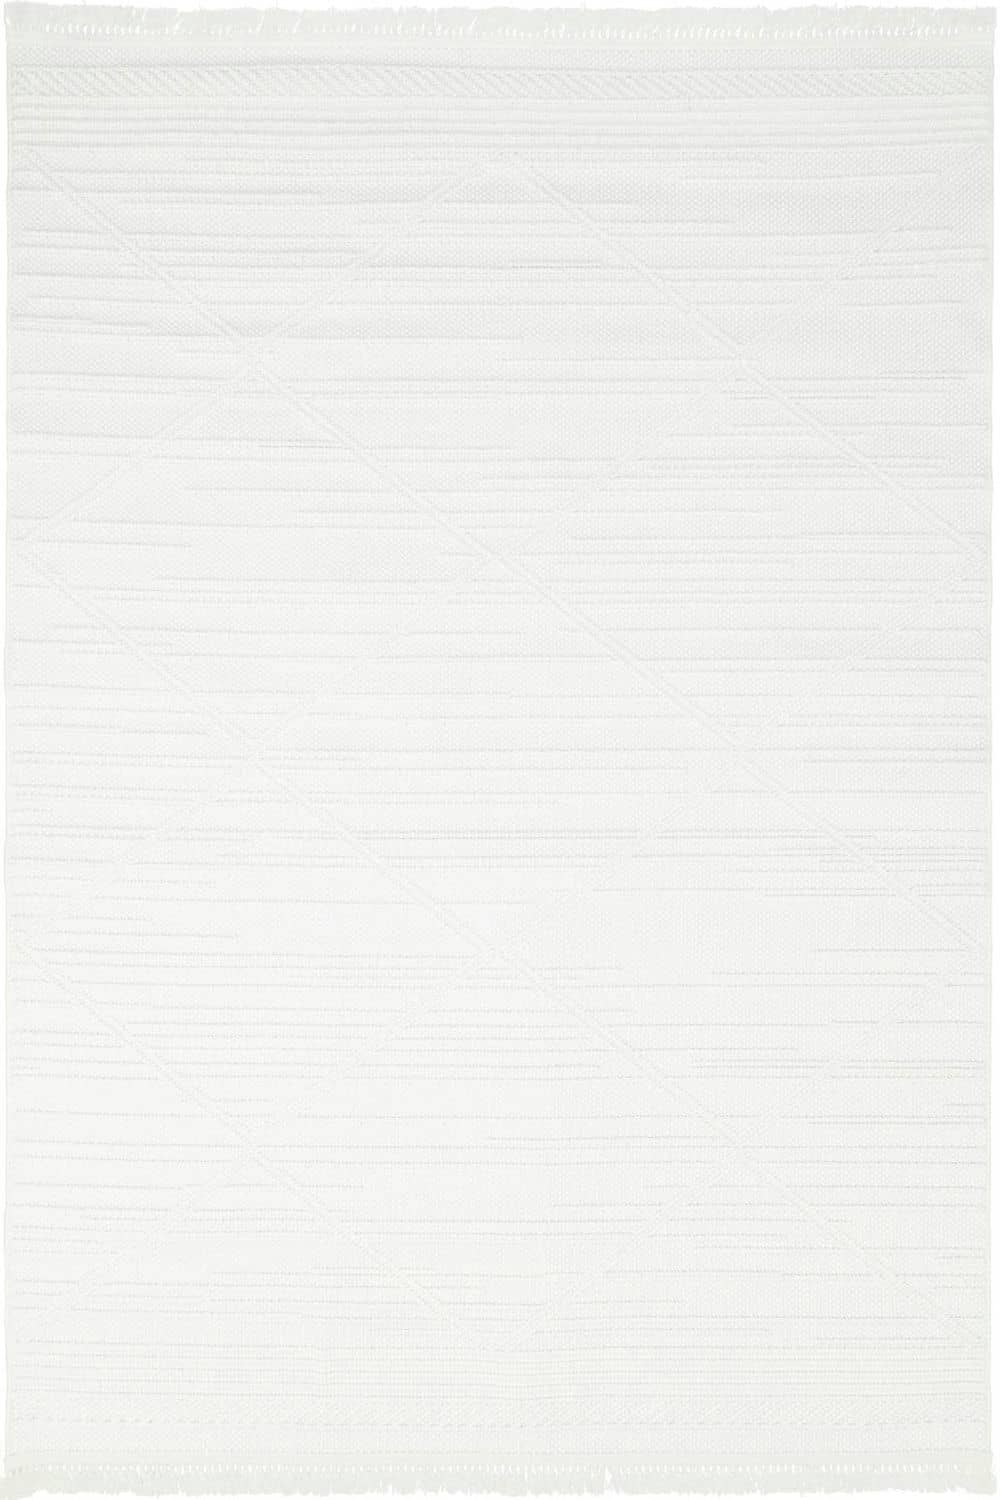 Beyaz Saçaklı Örgü Tarz Halı Dekhera Tecer T06 Modeli Uygun Fiyata Dekhera'da